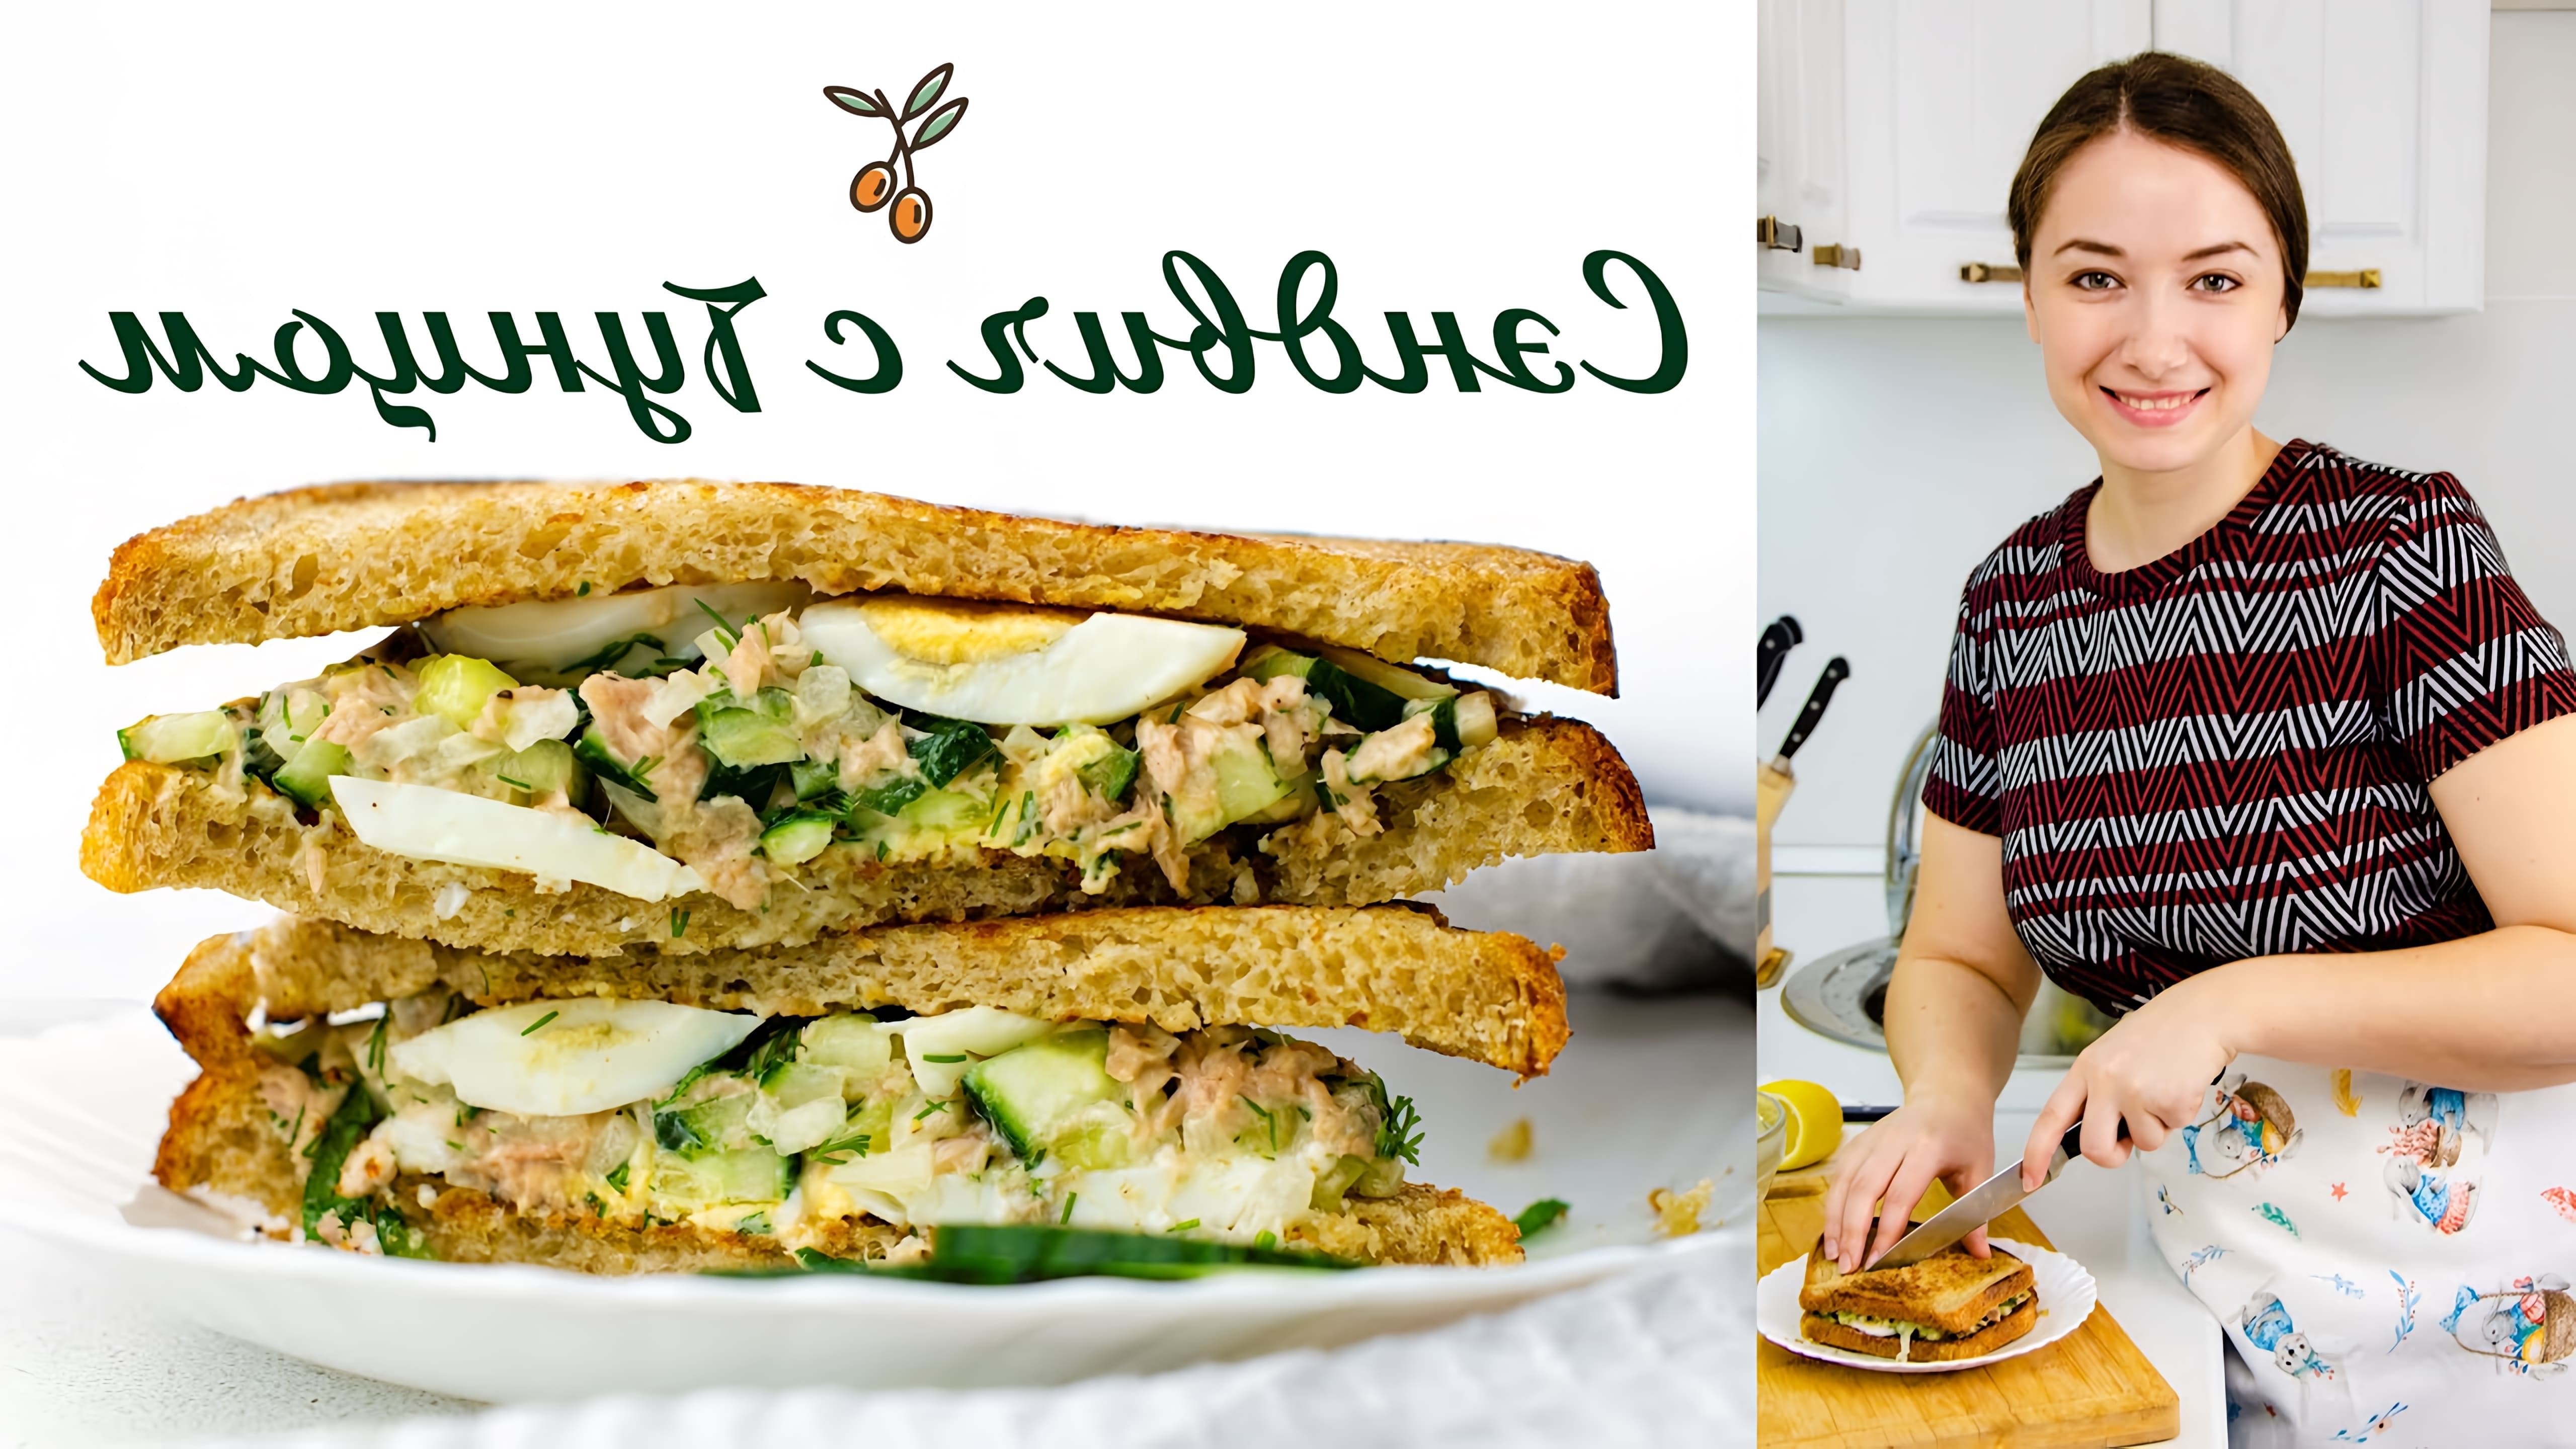 В этом видео демонстрируется процесс приготовления сэндвича с тунцом